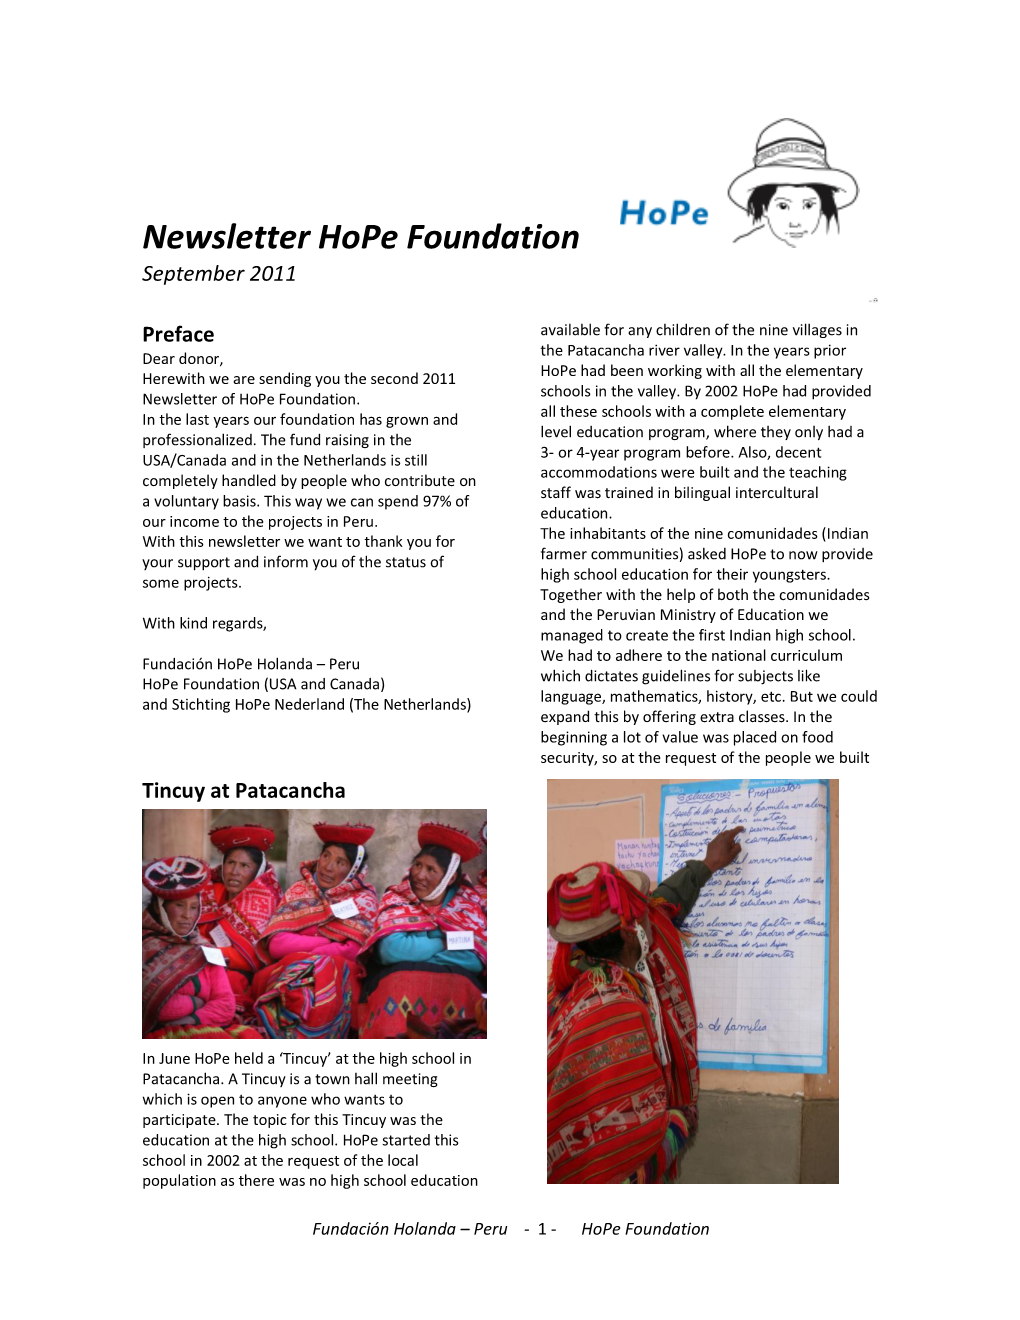 Newsletter Hope Foundation September 2011